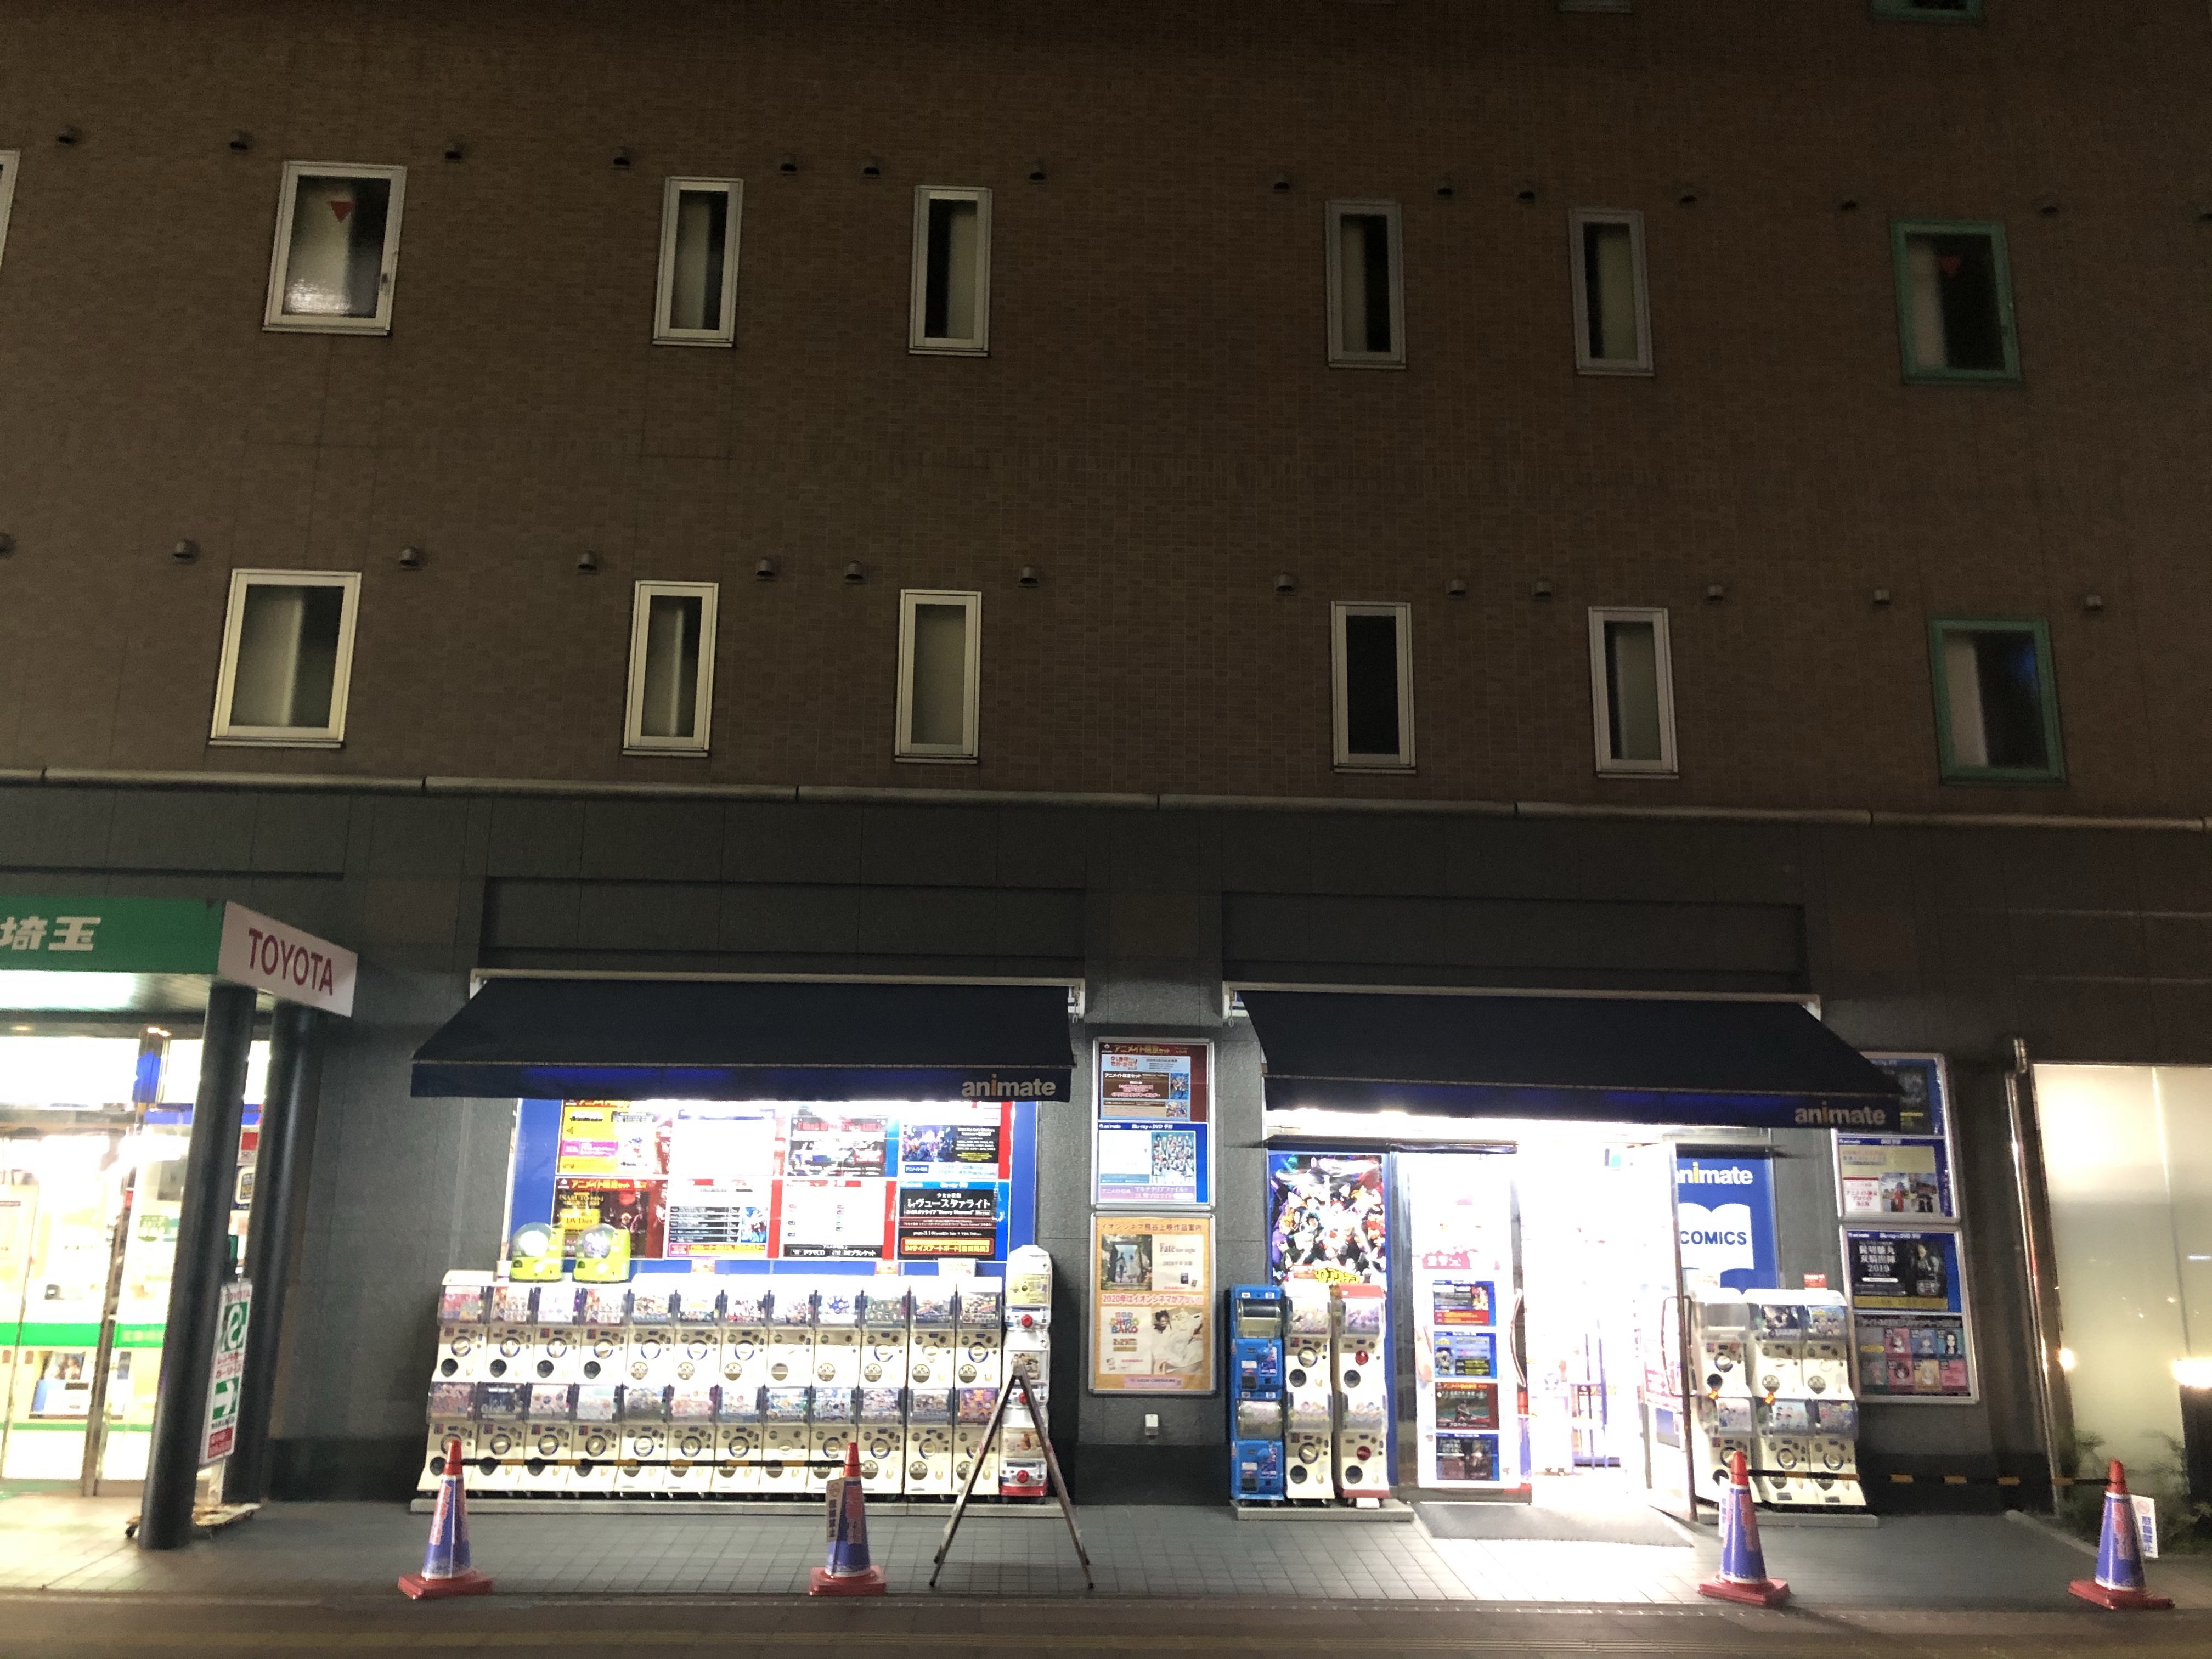 熊谷 埼玉県 にあるアニメイトが小規模すぎ 増築オナシャス ハルナスビのブログ